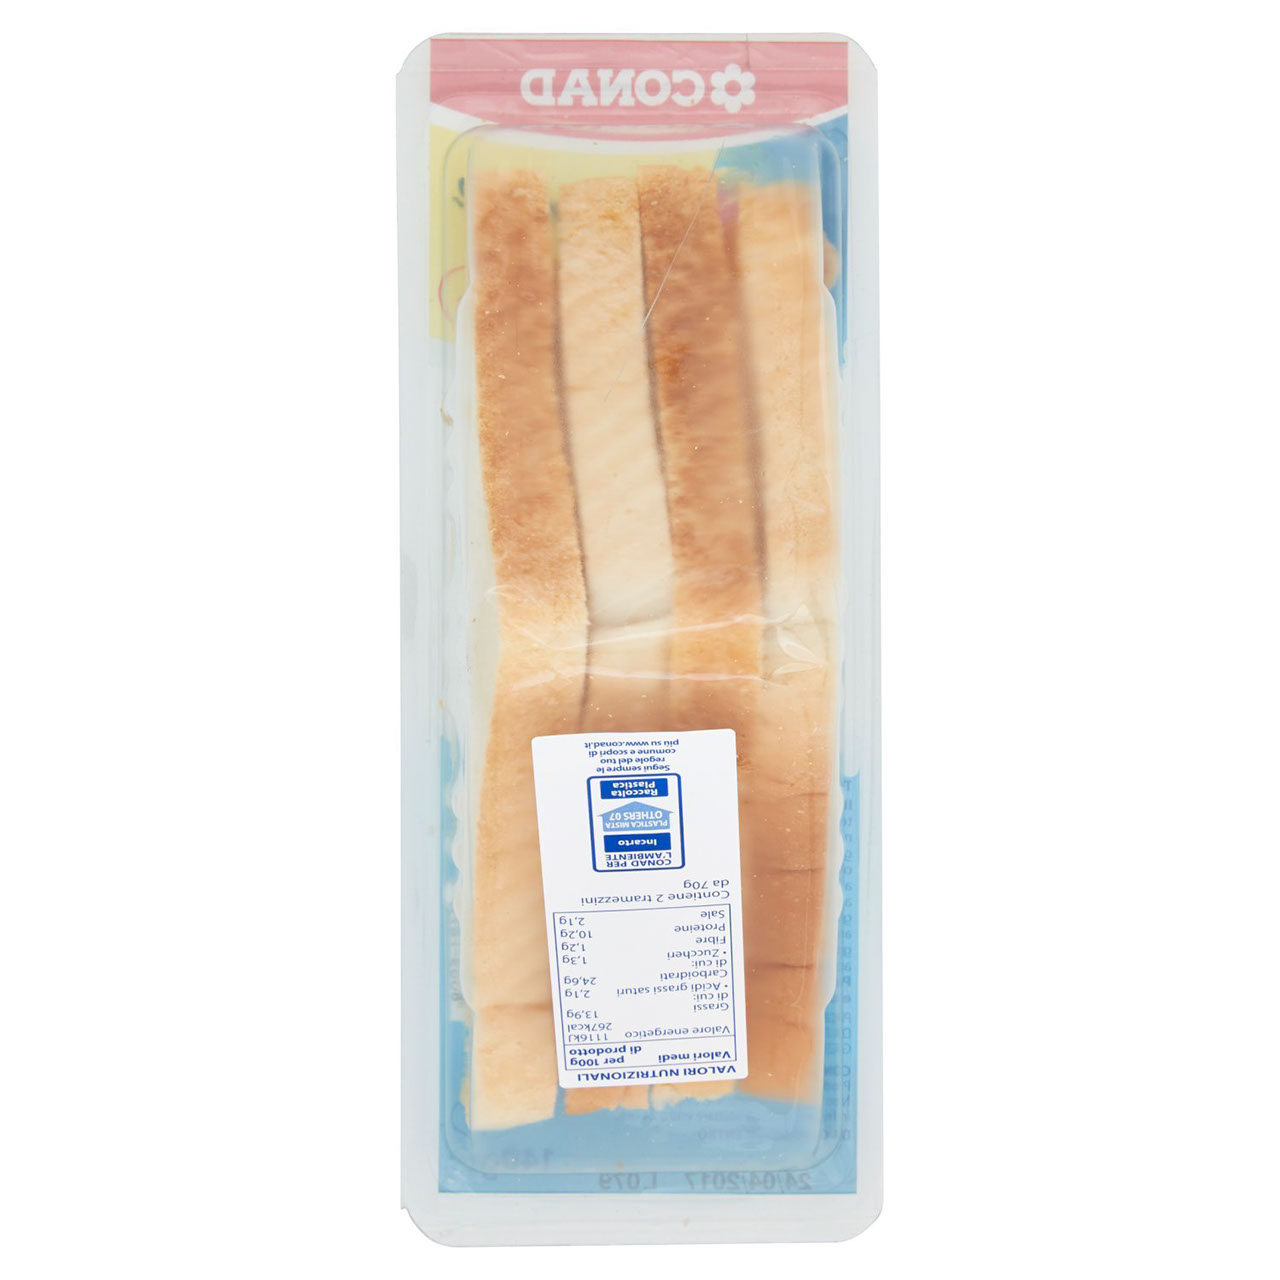 Tramezzini Salmone 140 g Conad in vendita online